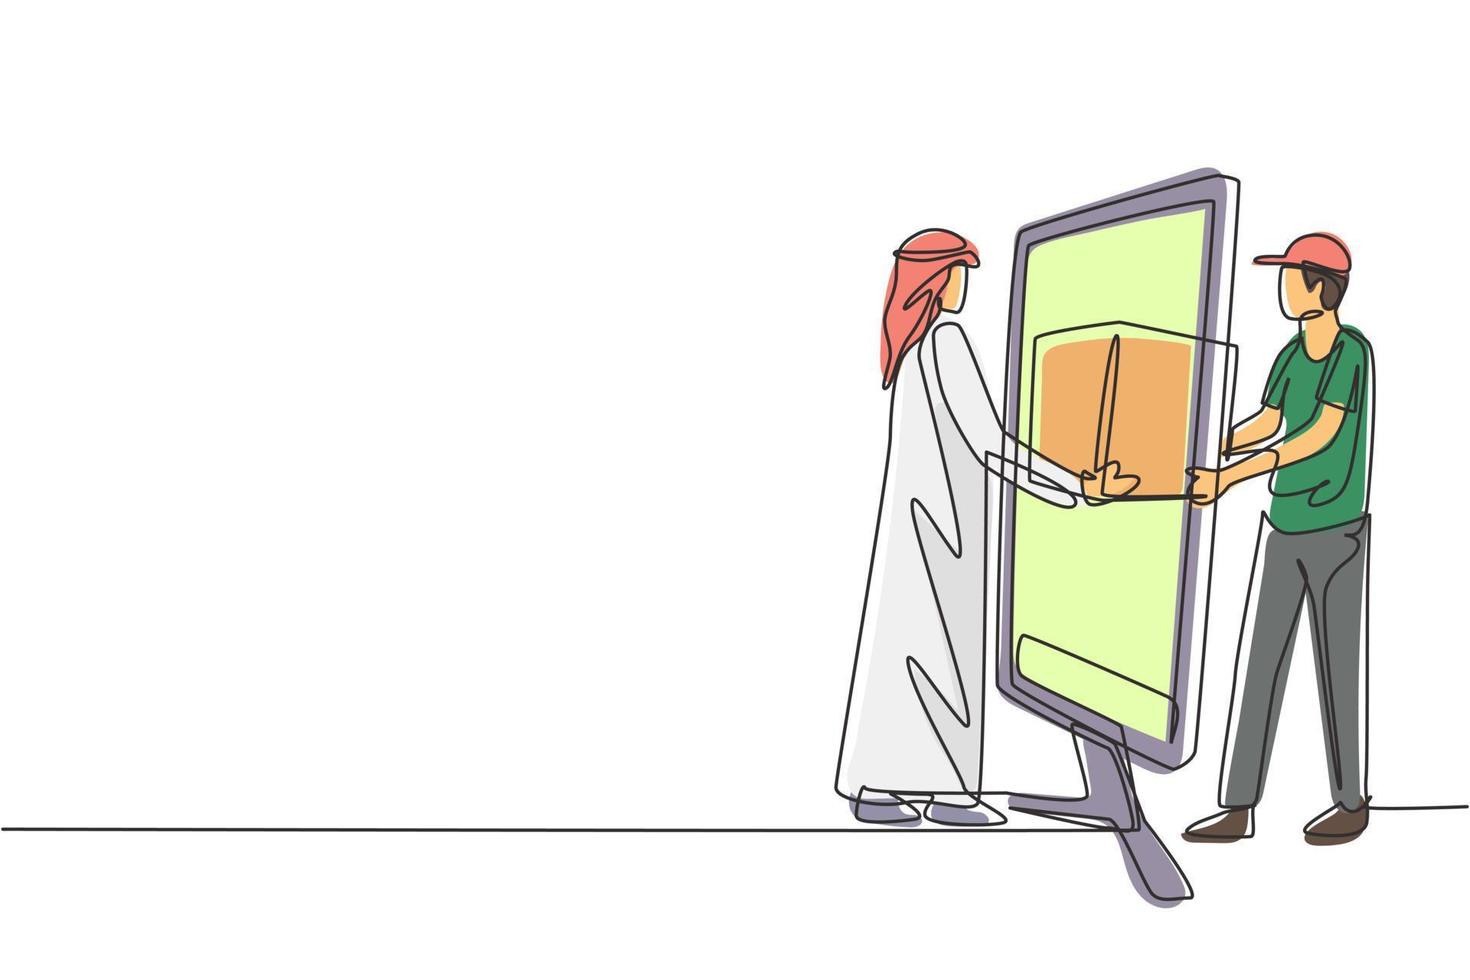 El mensajero masculino de dibujo continuo de una línea entrega el paquete de la caja, a través de la pantalla del monitor, al cliente árabe masculino. concepto de servicio de entrega en línea. Ilustración gráfica de vector de diseño de dibujo de una sola línea